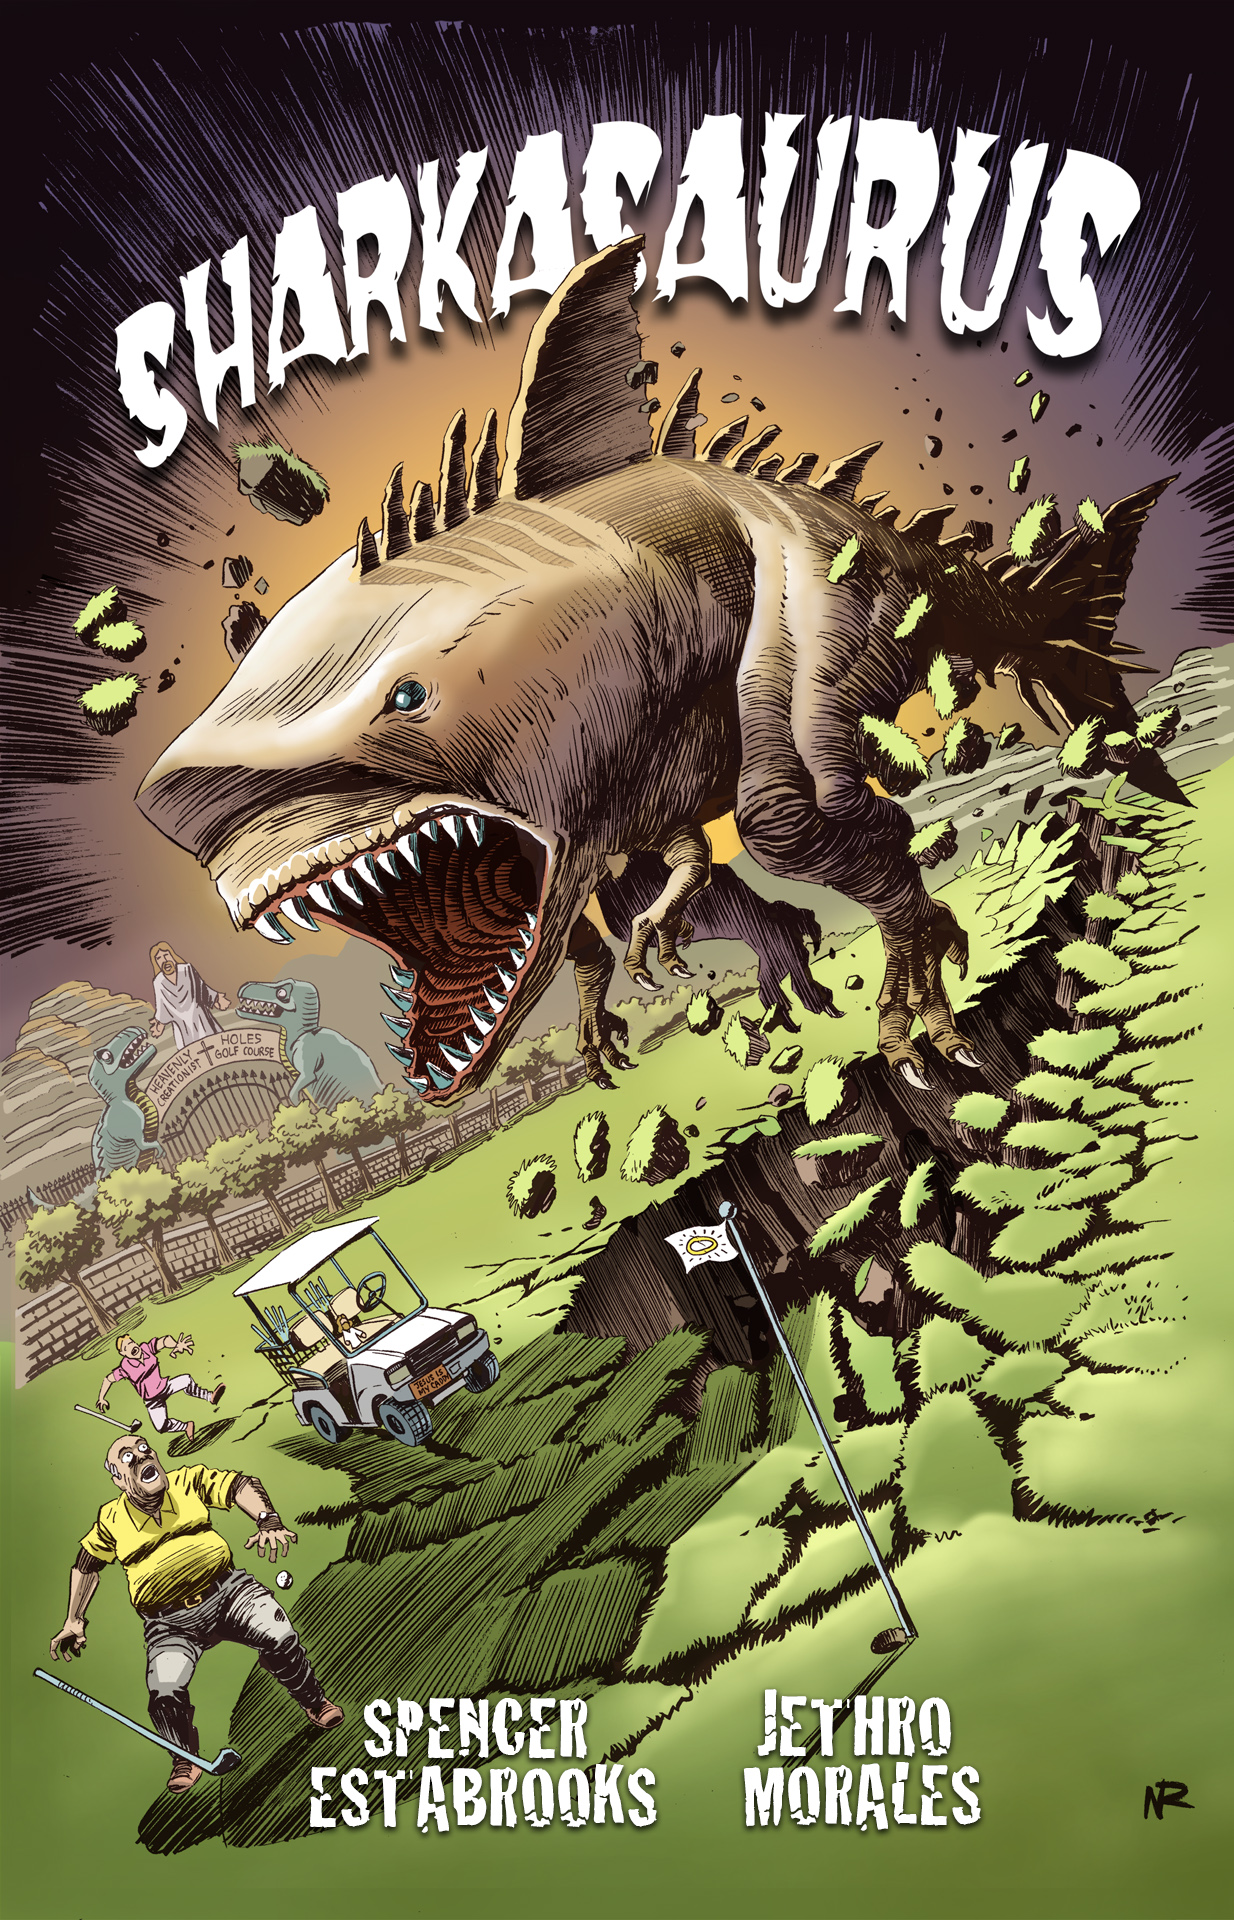 Sharkasaurus_cover_credits.jpg